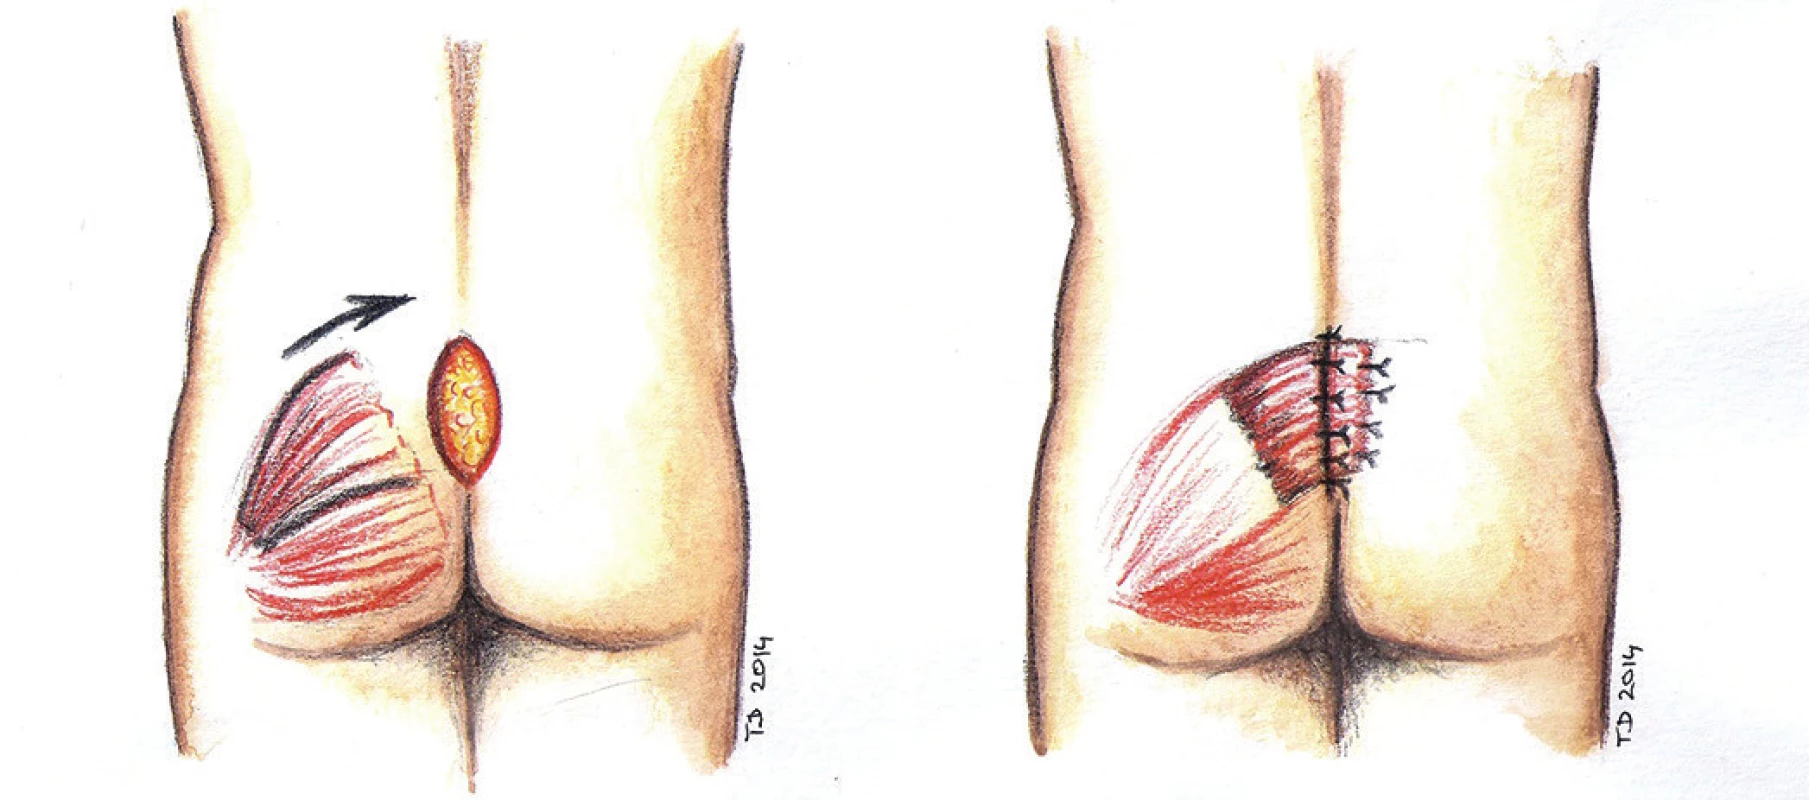 Lalokový posun za použití svalu - schéma
Fig. 7: Muscle flap reconstruction - scheme